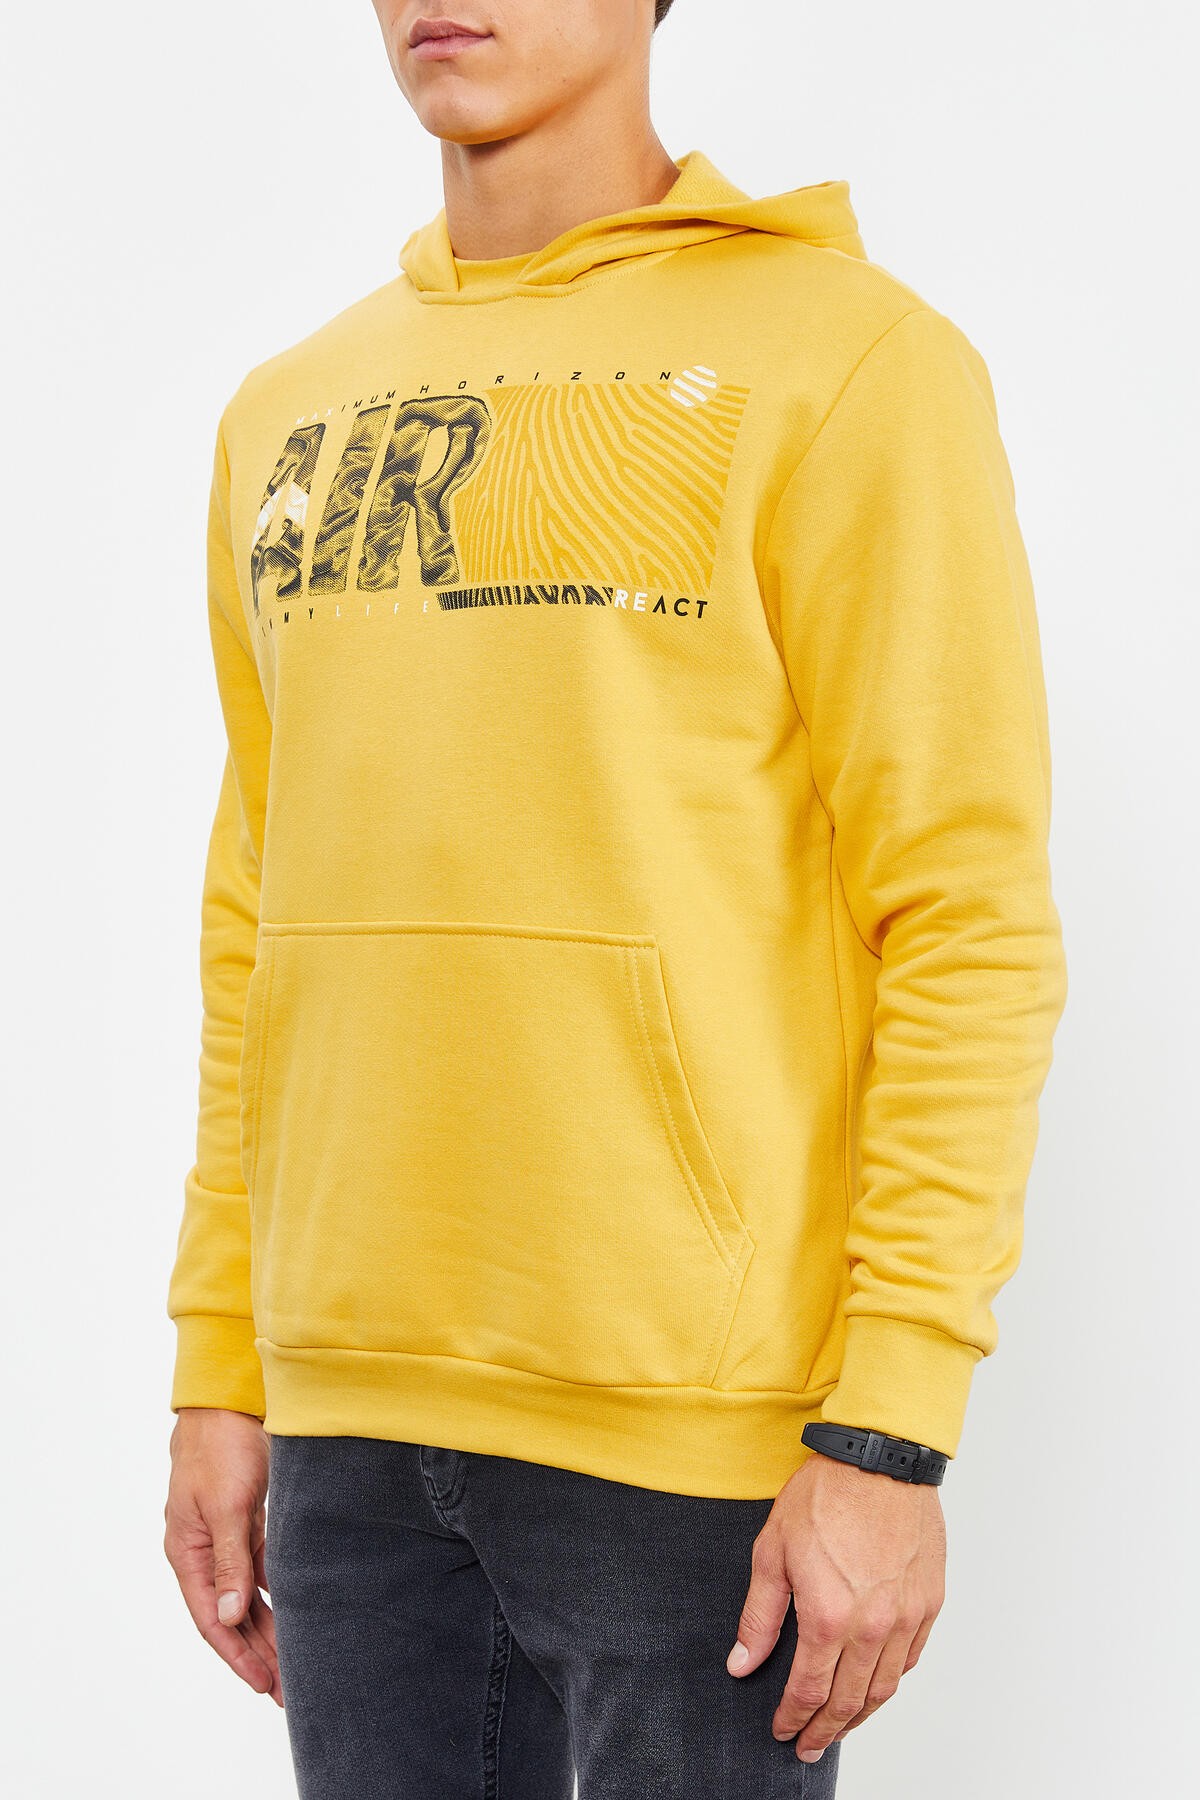 Hardal Air Yazı Baskılı Kapüşonlu Rahat Form Erkek Sweatshirt - 88009